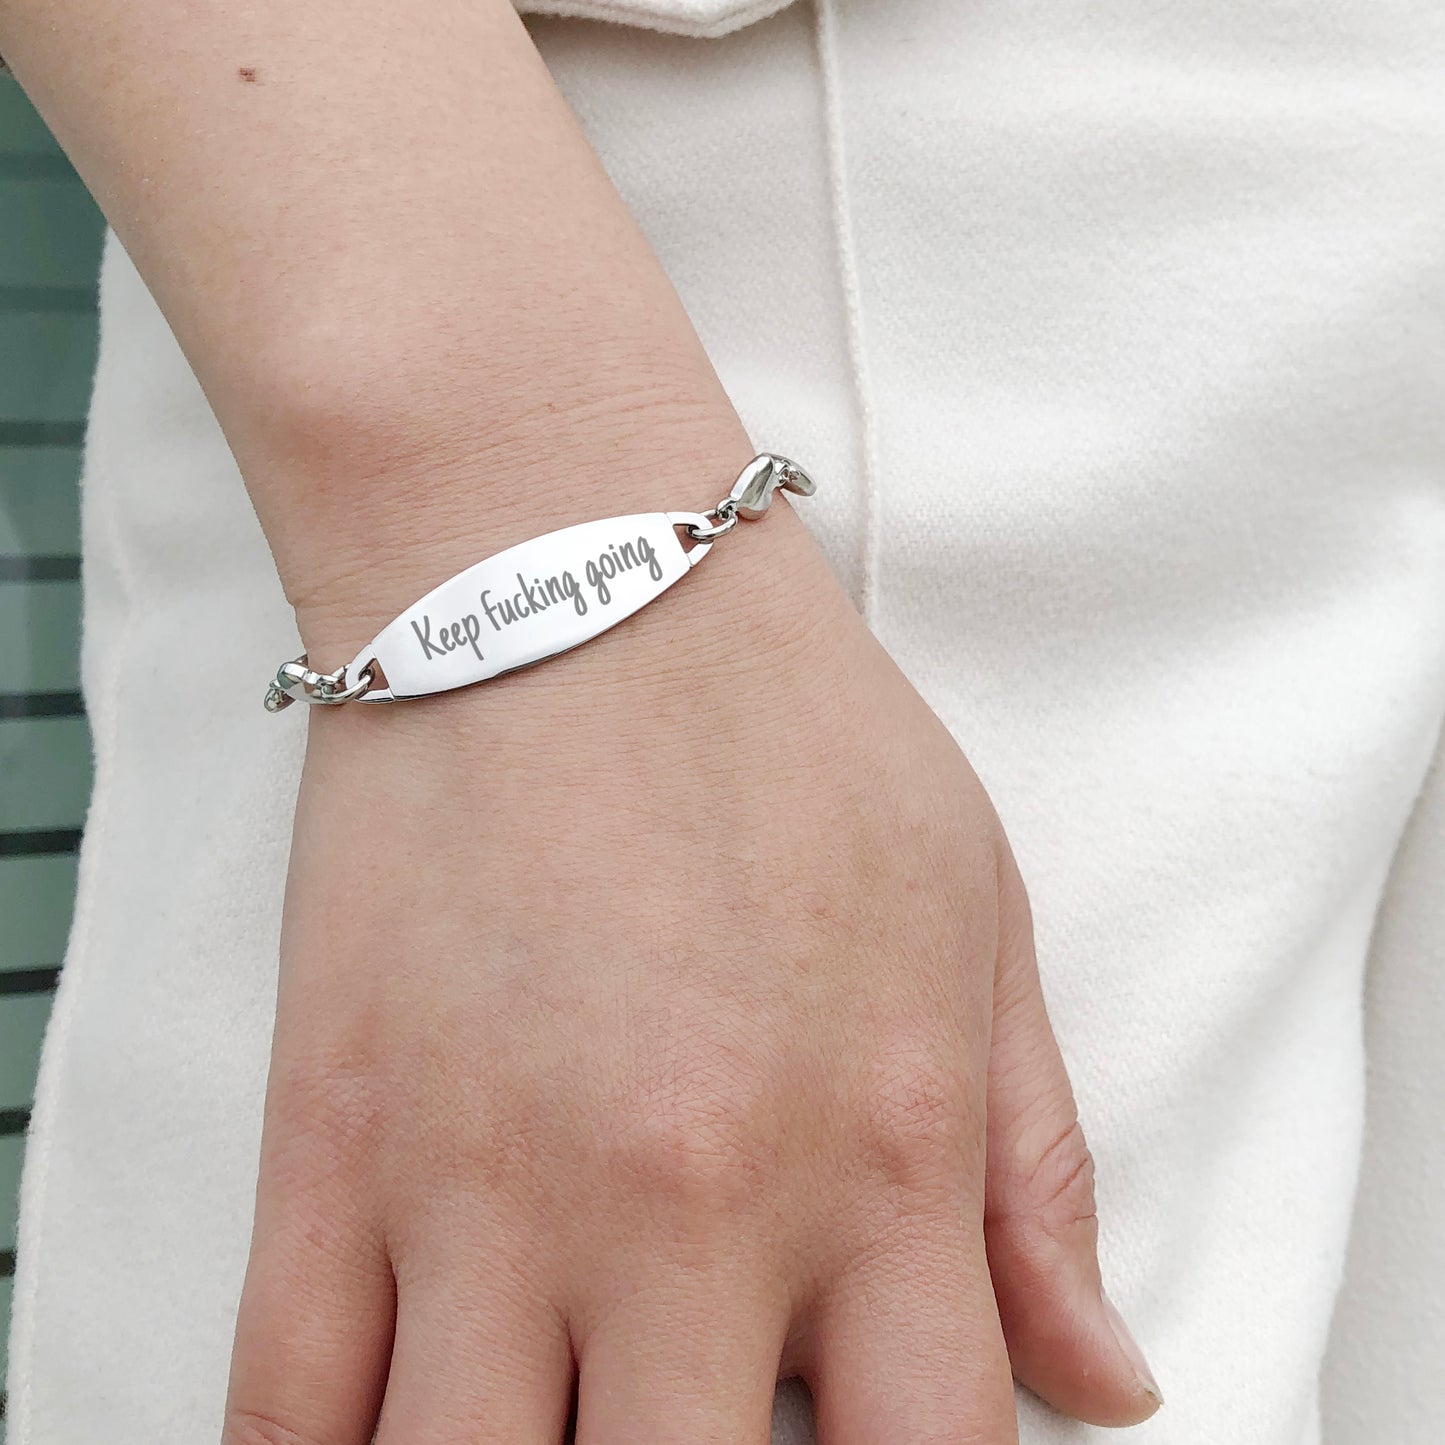 Inspirational Bracelet -Keep f*cking going- Fashion Heart Friendship Bracelets Festival Gift for Women